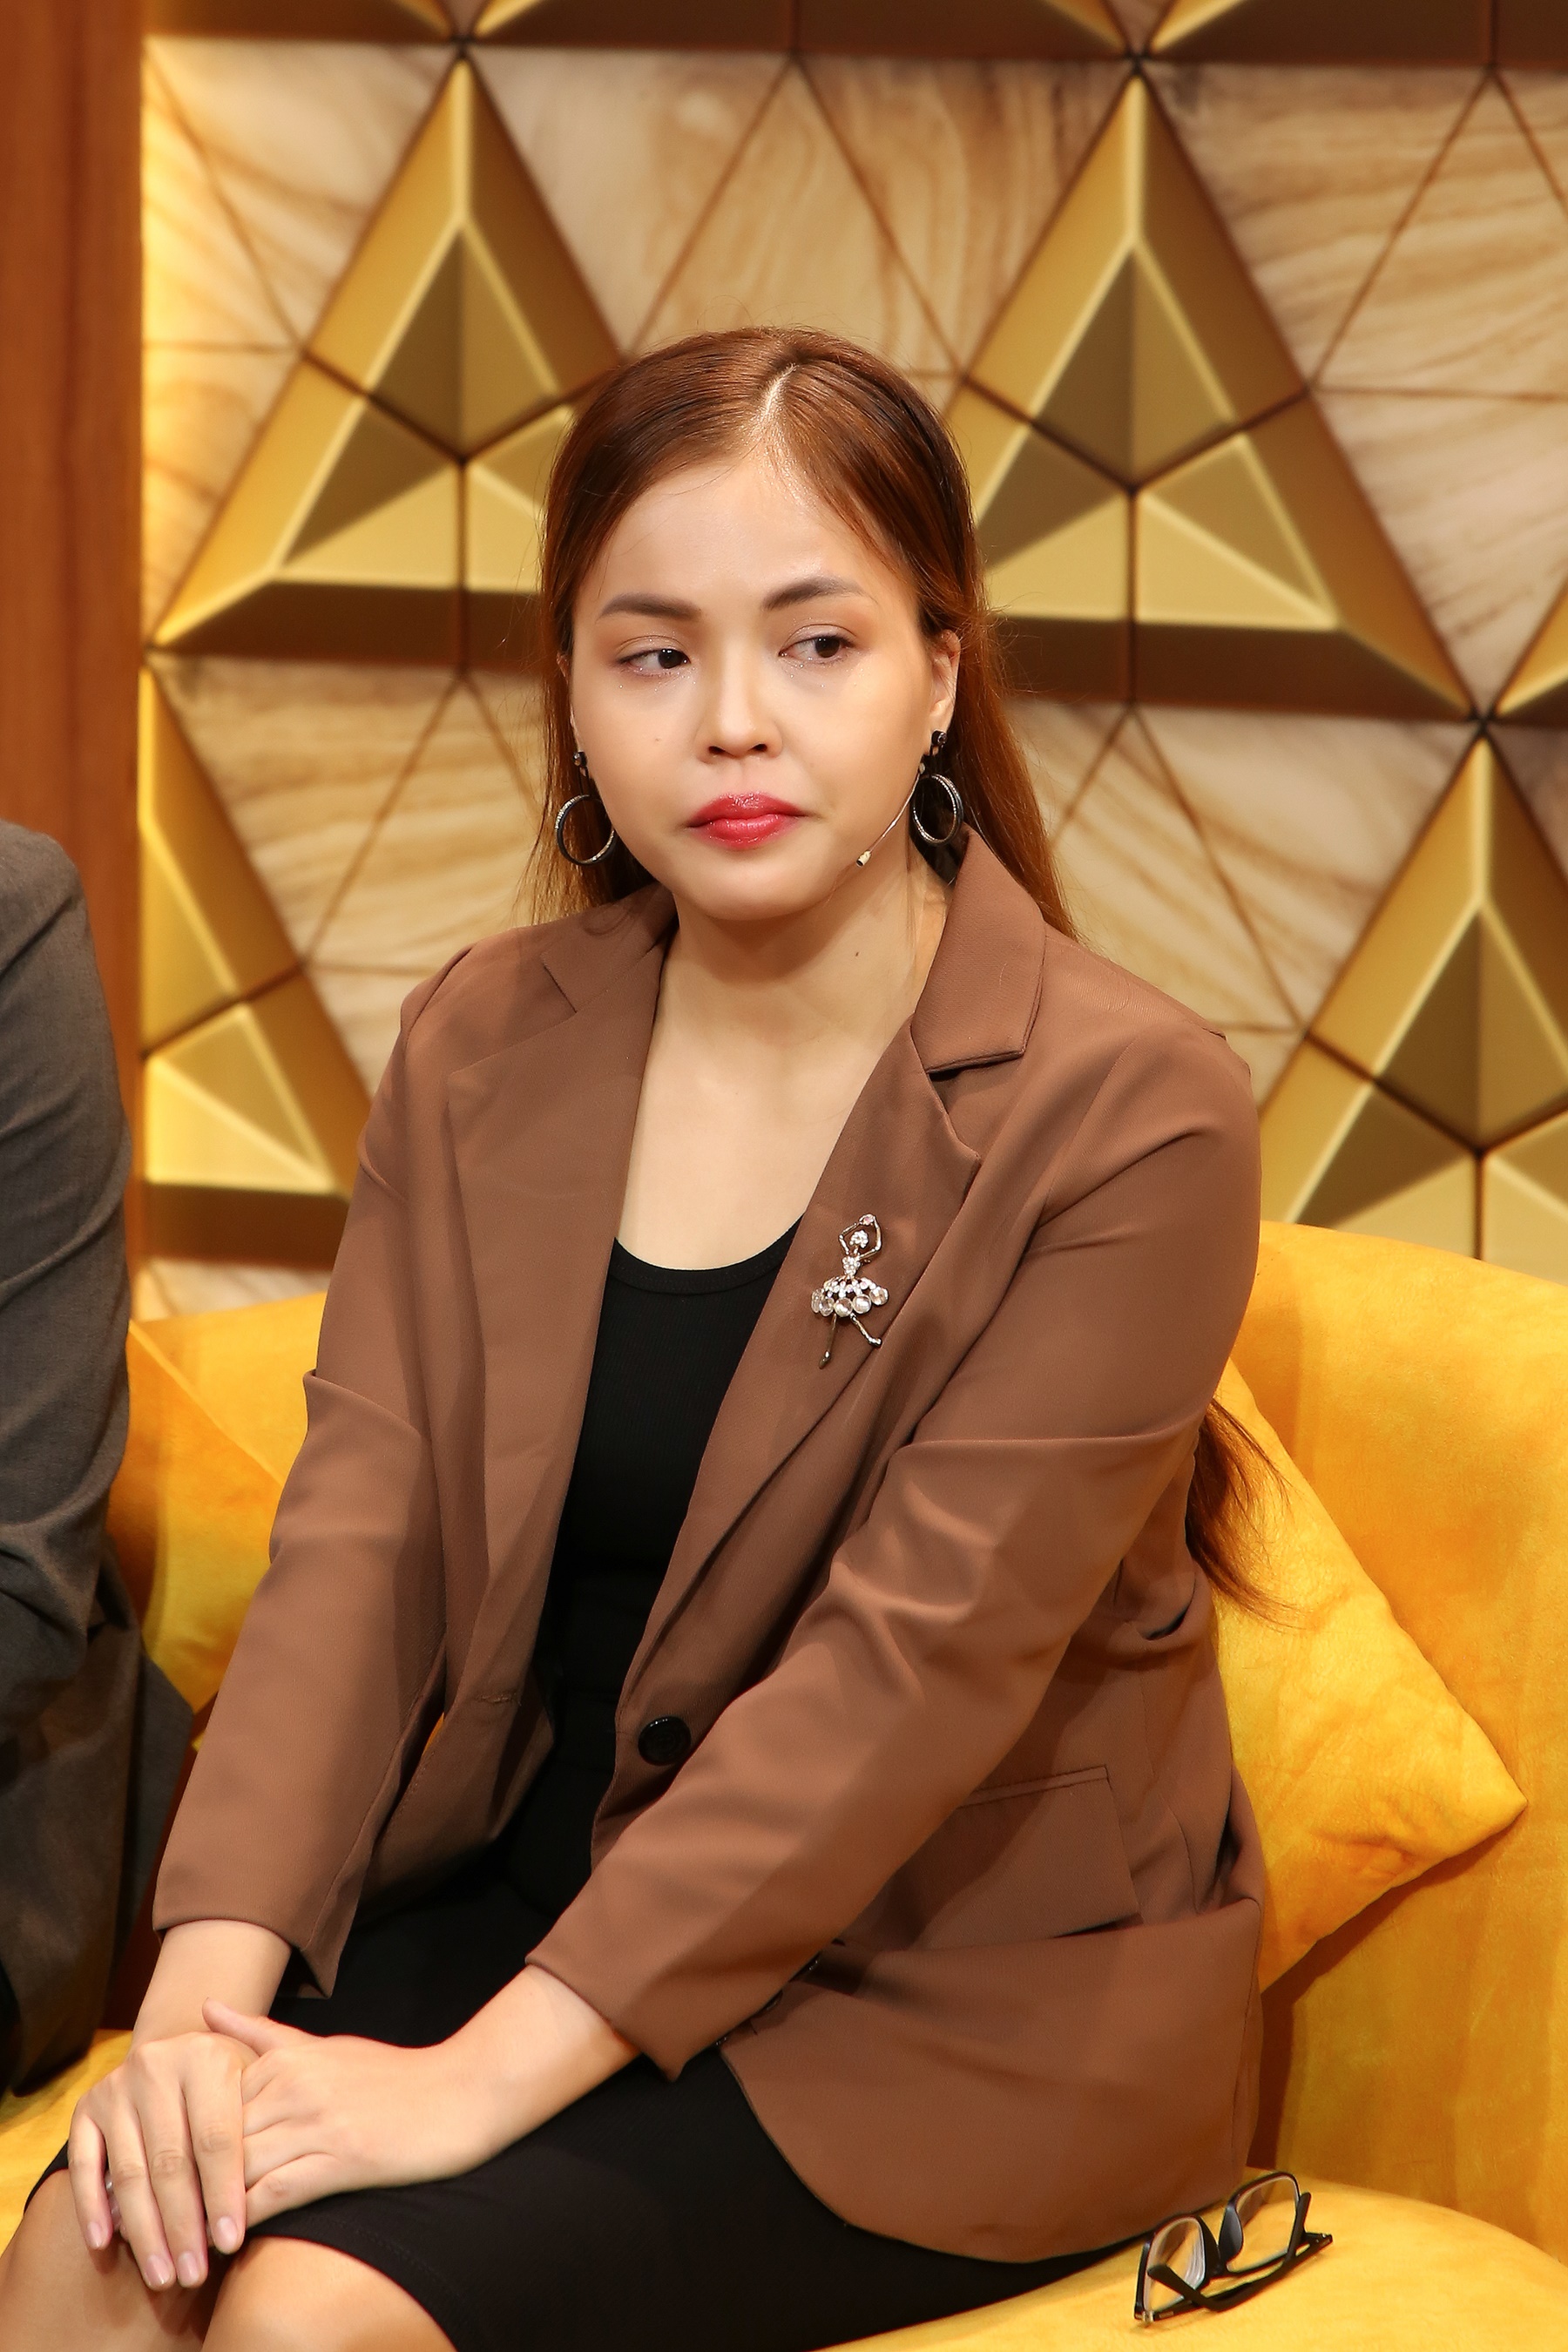 Thuận Vợ Thuận Chồng: Từng muốn li hôn vì chồng nói quá nhiều trong lúc vợ nổi nóng